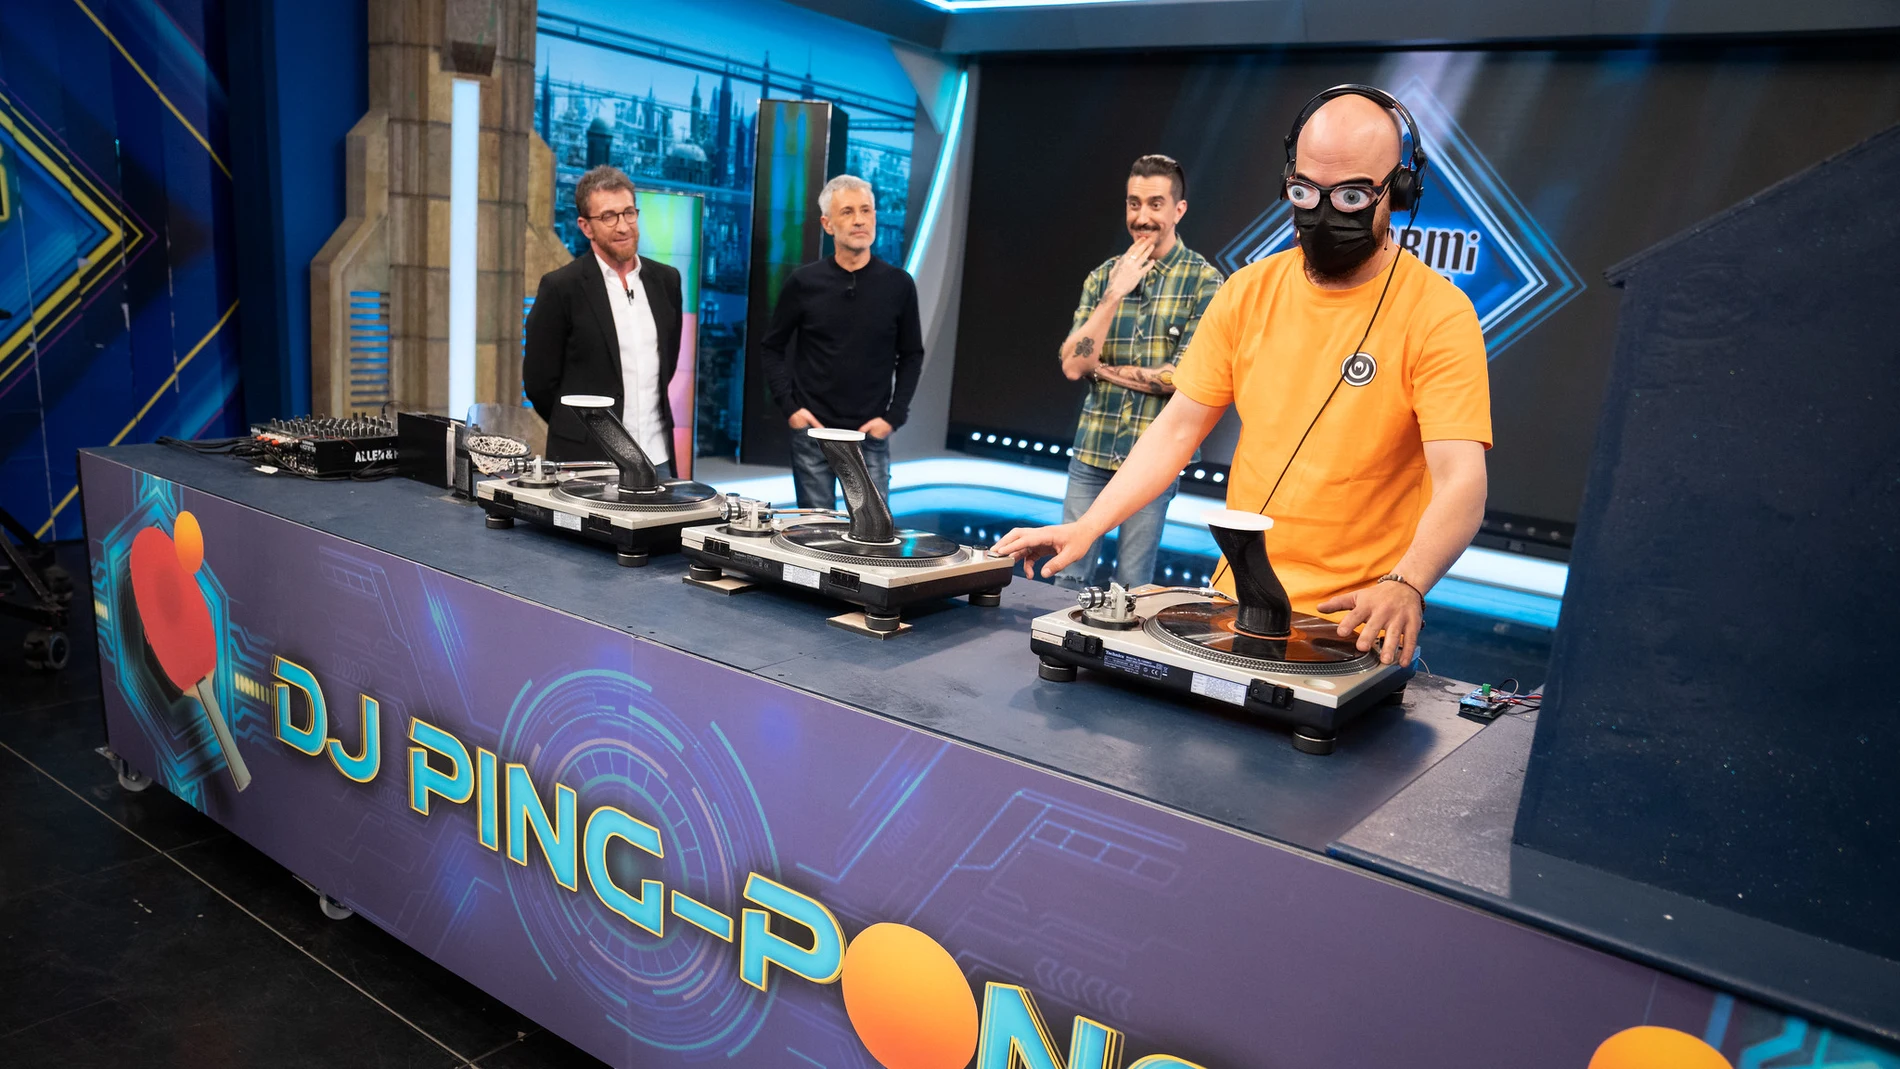 ¡Ping-chando a niveles extremos! El equipo de ciencia de 'El Hormiguero 3.0' lo borda ante un reto imposible